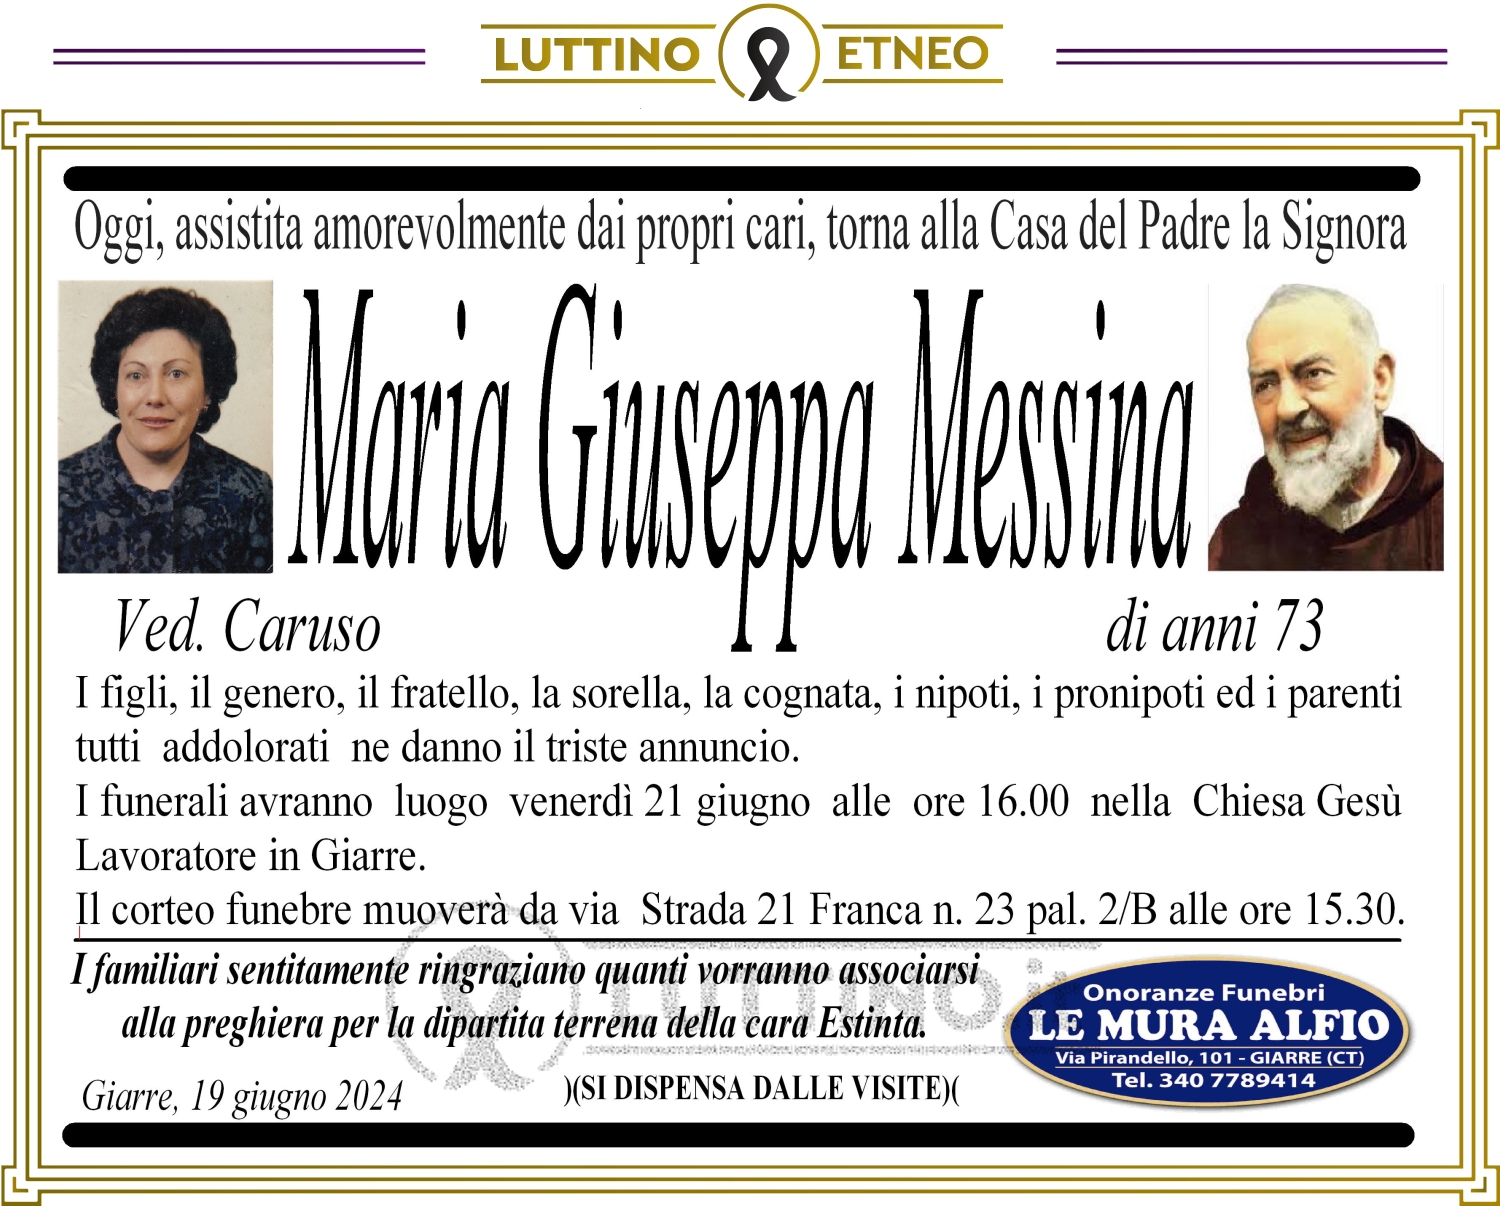 Maria Giuseppa Messina